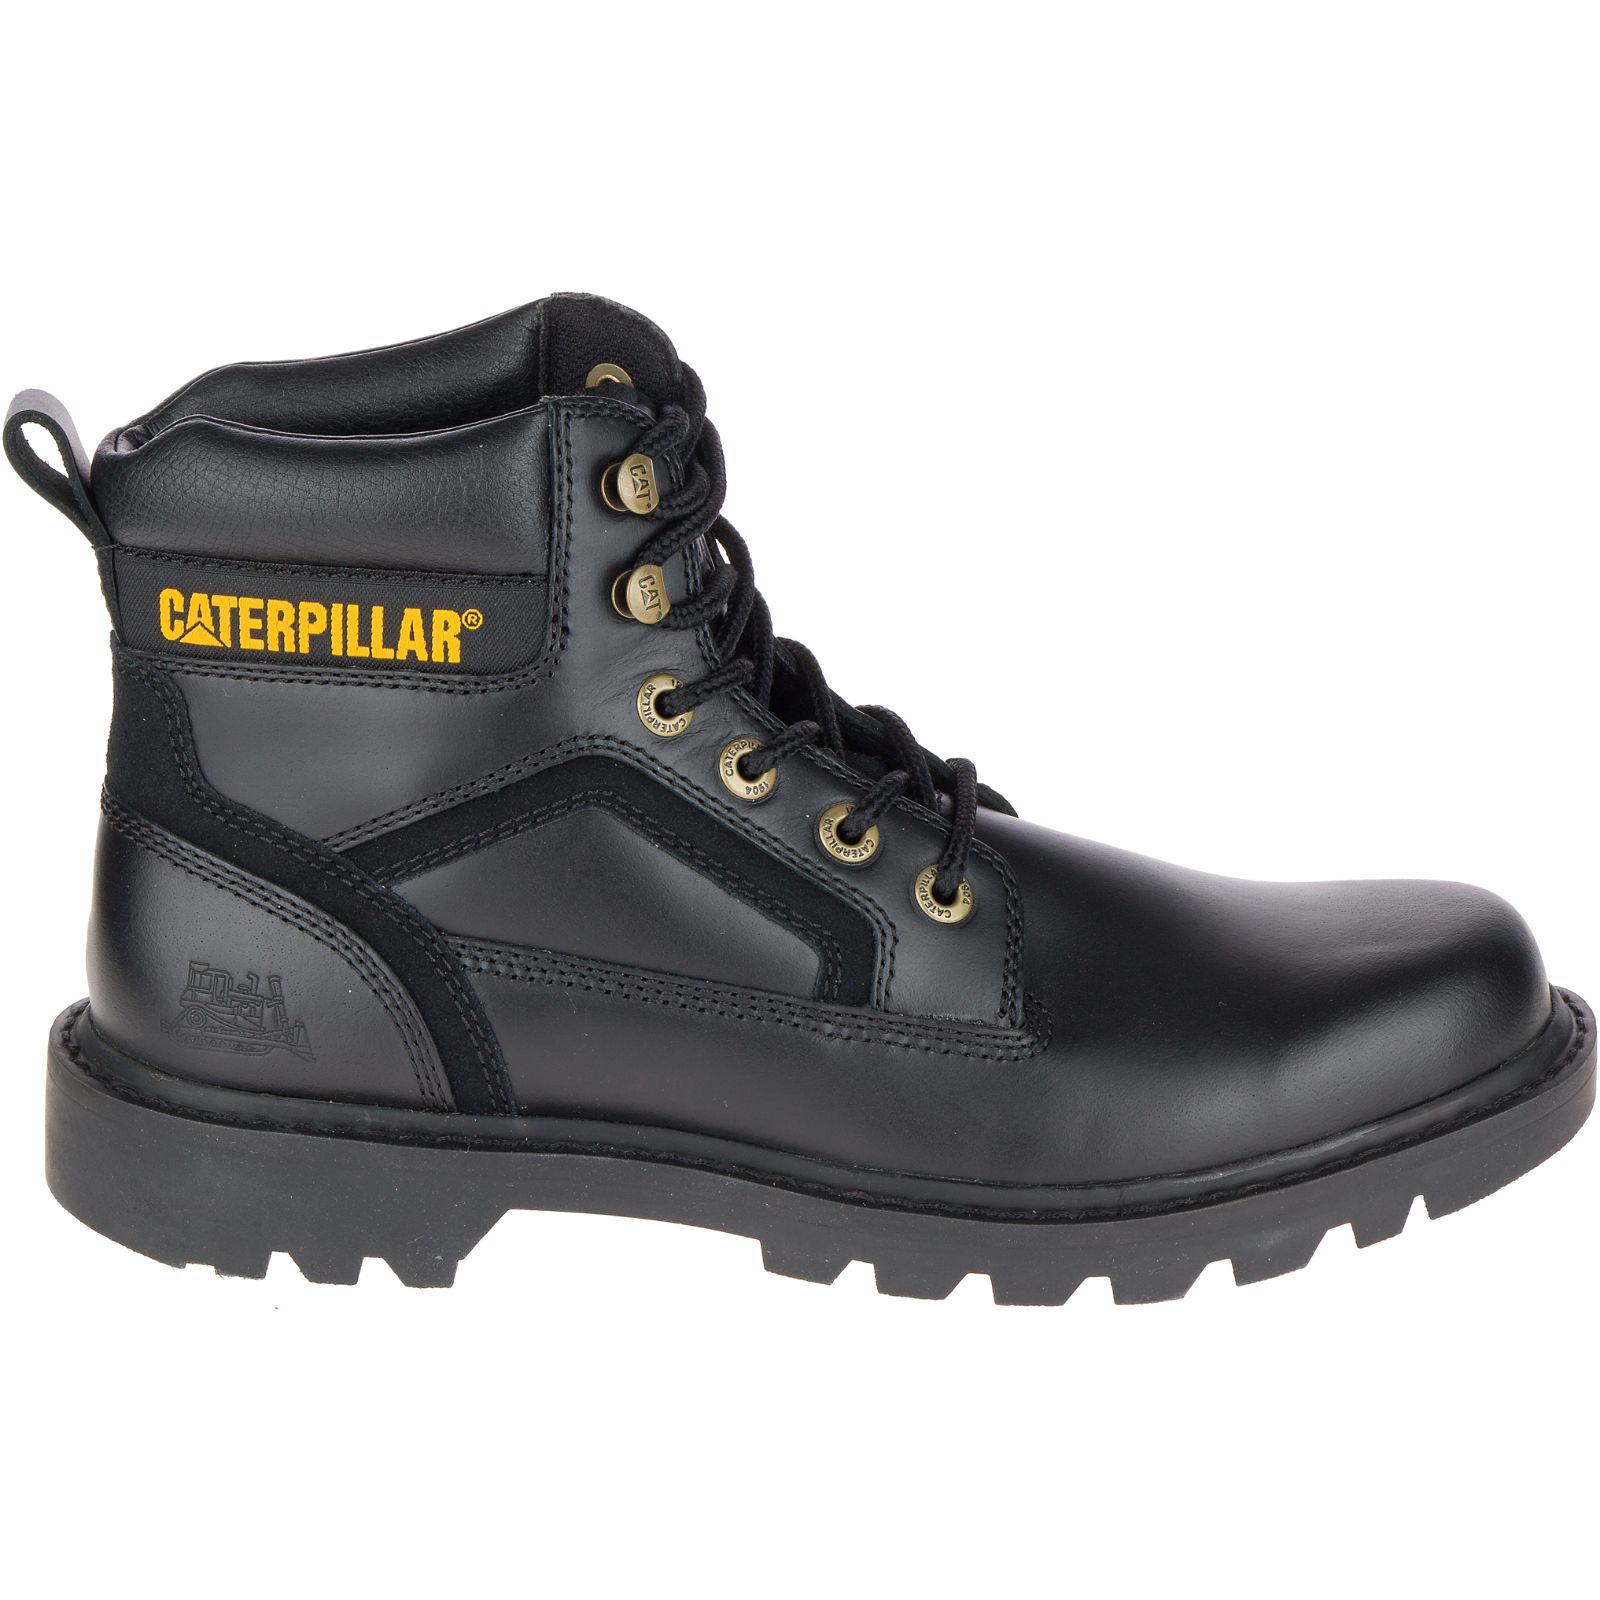 Caterpillar Boots Sale Pakistan - Caterpillar Stickshift Mens Casual Boots Black (930461-BIR)